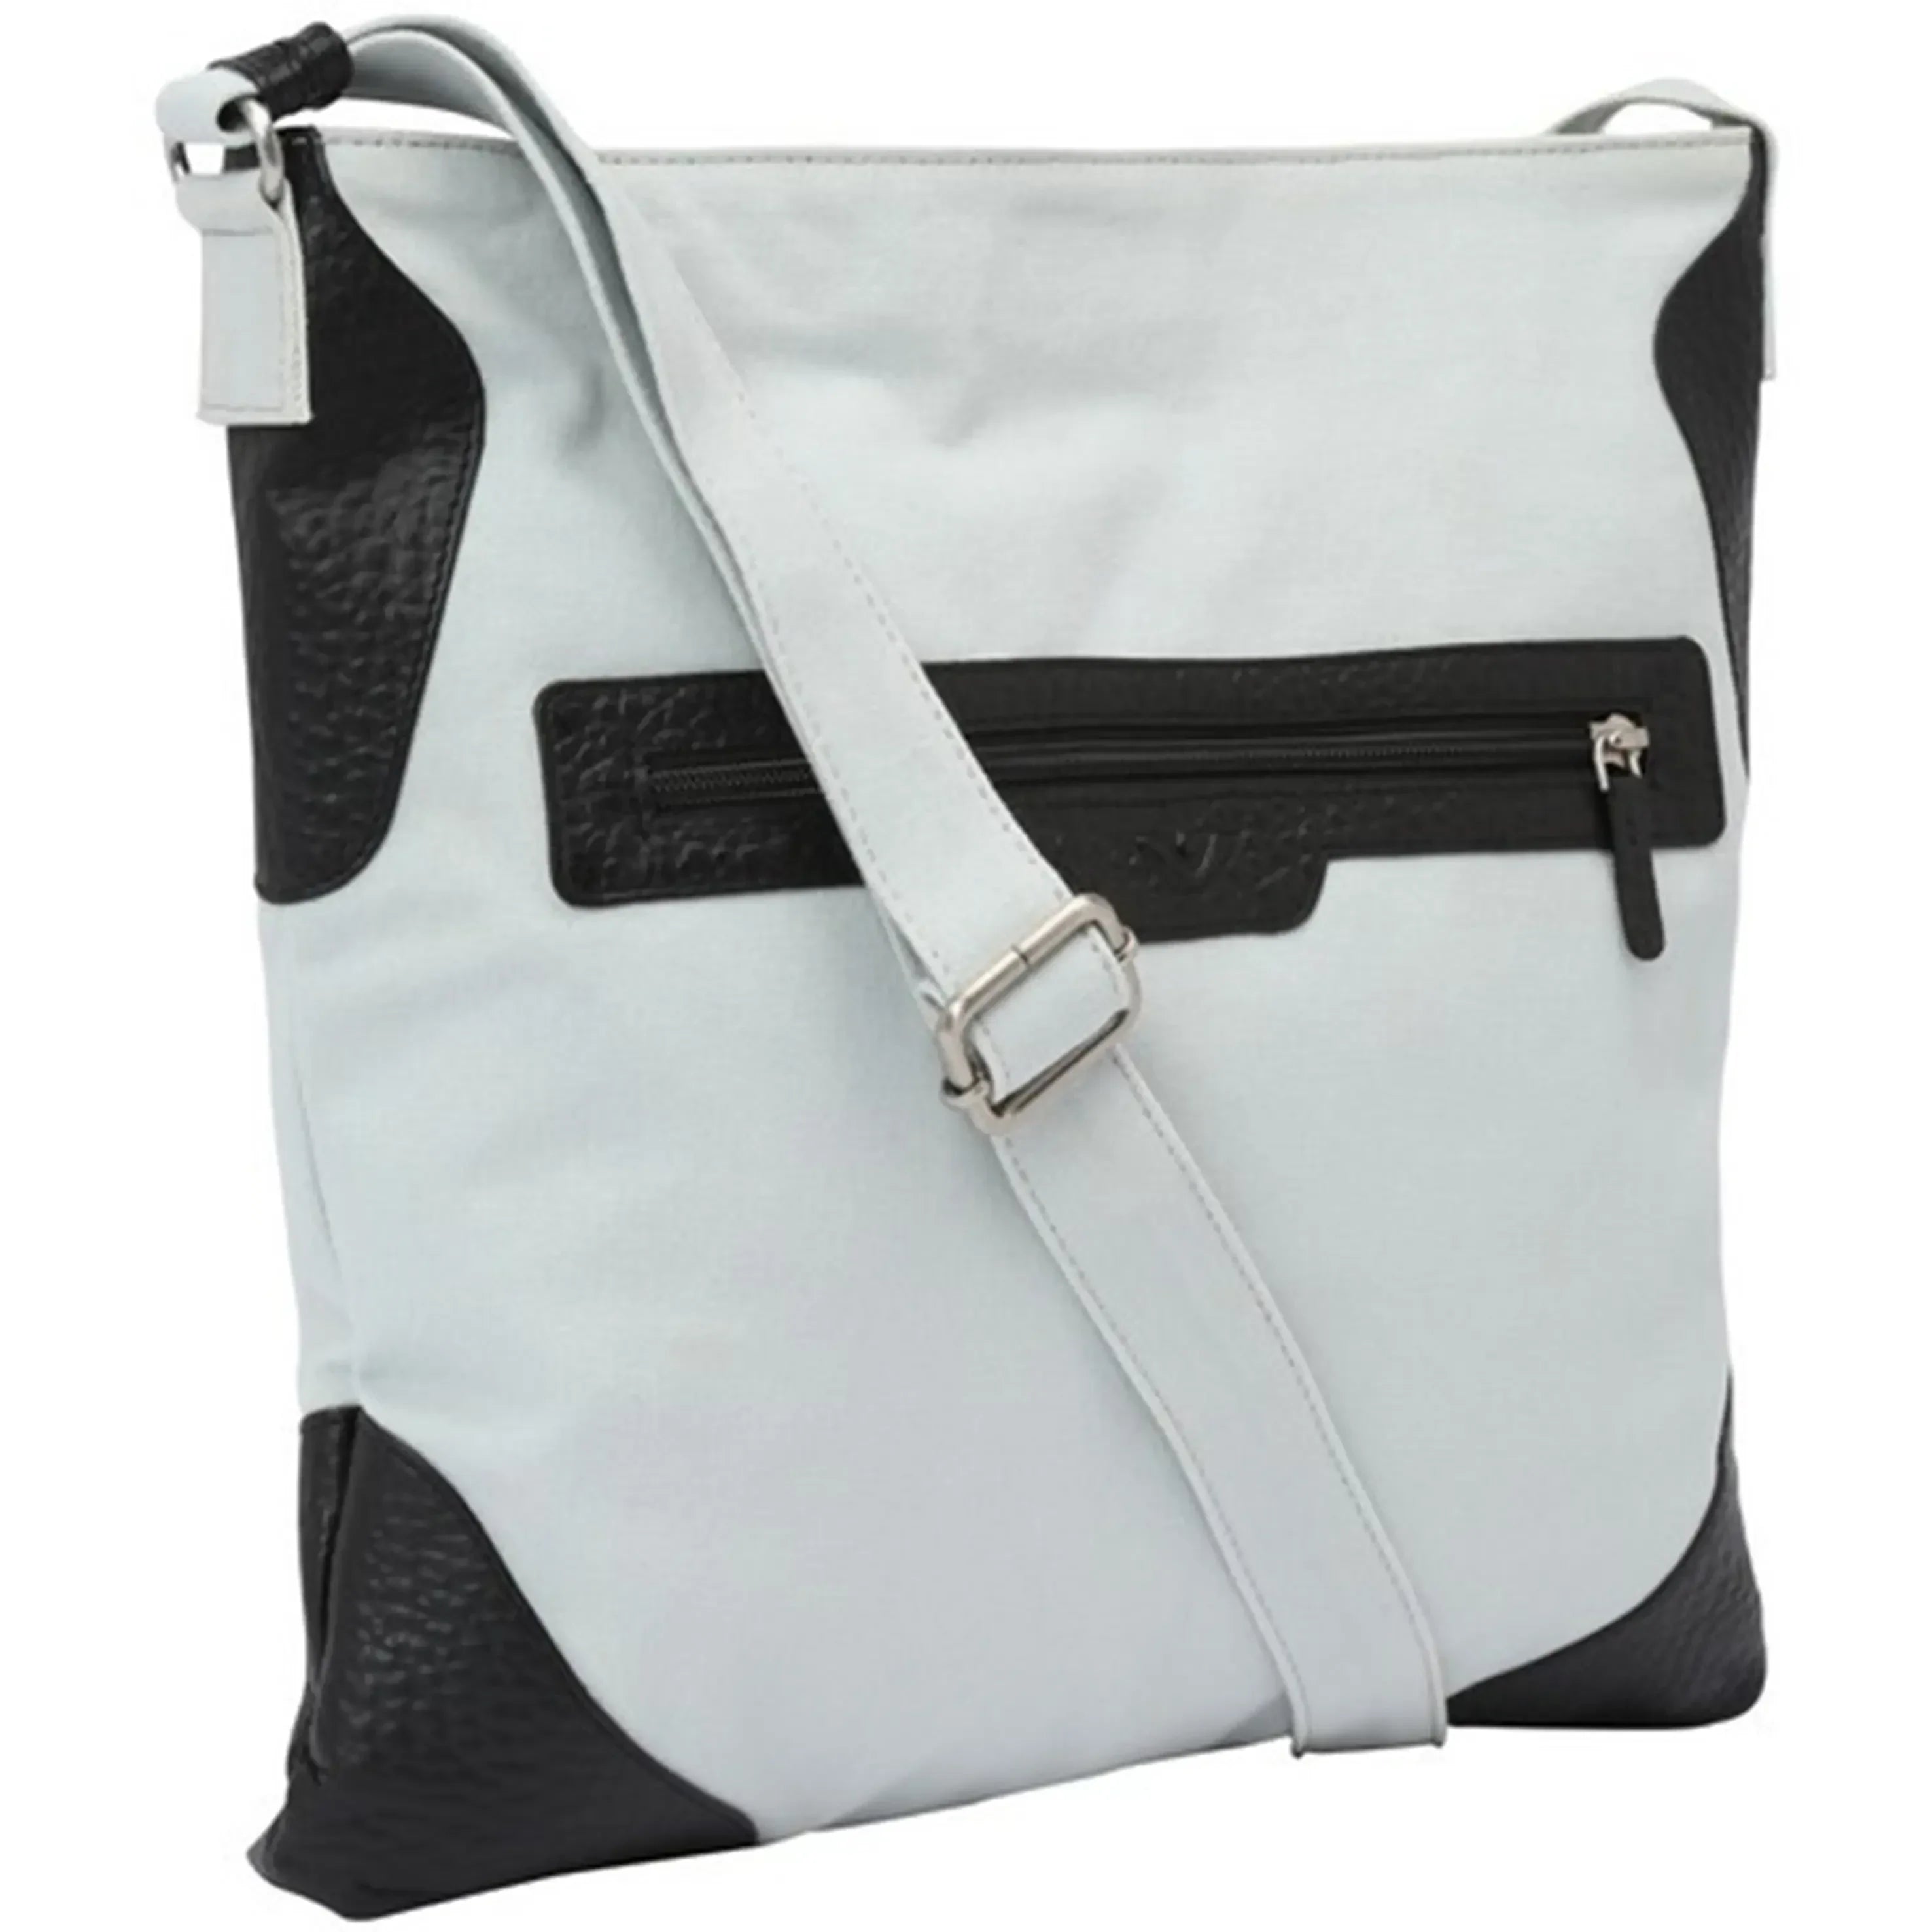 VOi-Design Sportivo Ria shoulder bag 34 cm - Black/Platinum